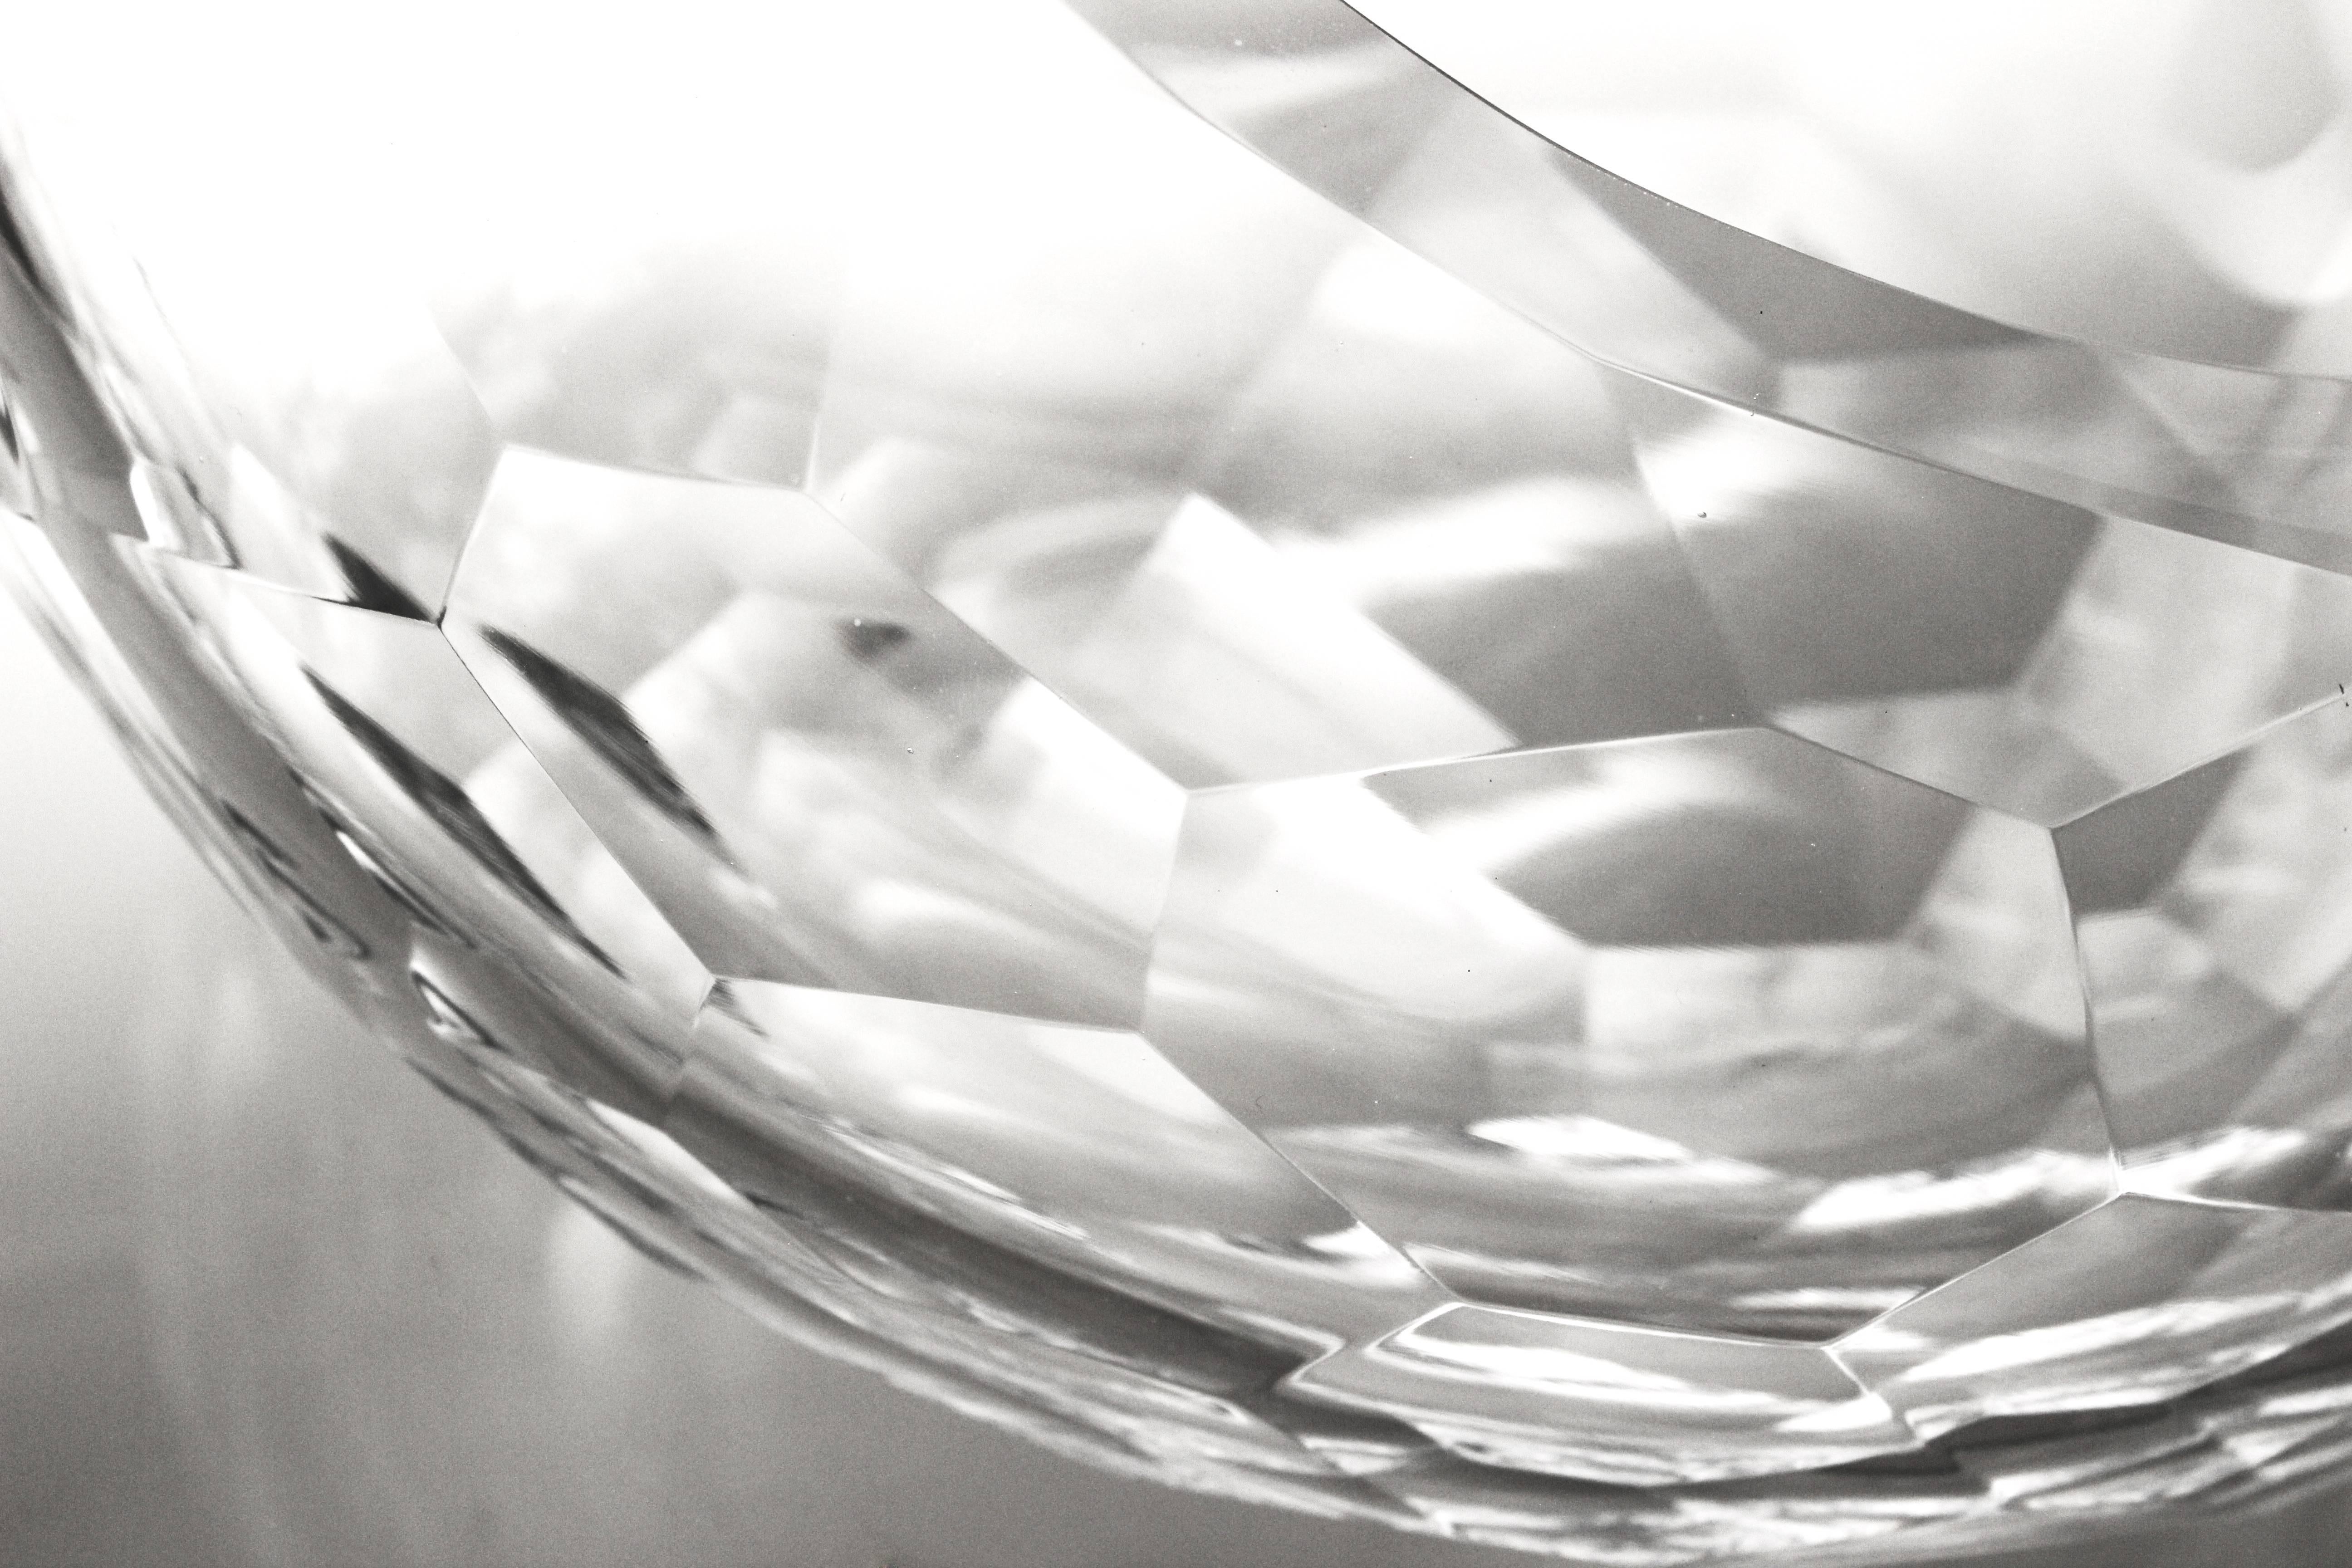 Ce bol en verre a été produit dans un design mexicain contemporain par Nouvelstudio, qui est né et évolue comme un atelier artistique dédié à l'expérimentation et au développement du verre. Après des manipulateurs experts capables de répondre à tous